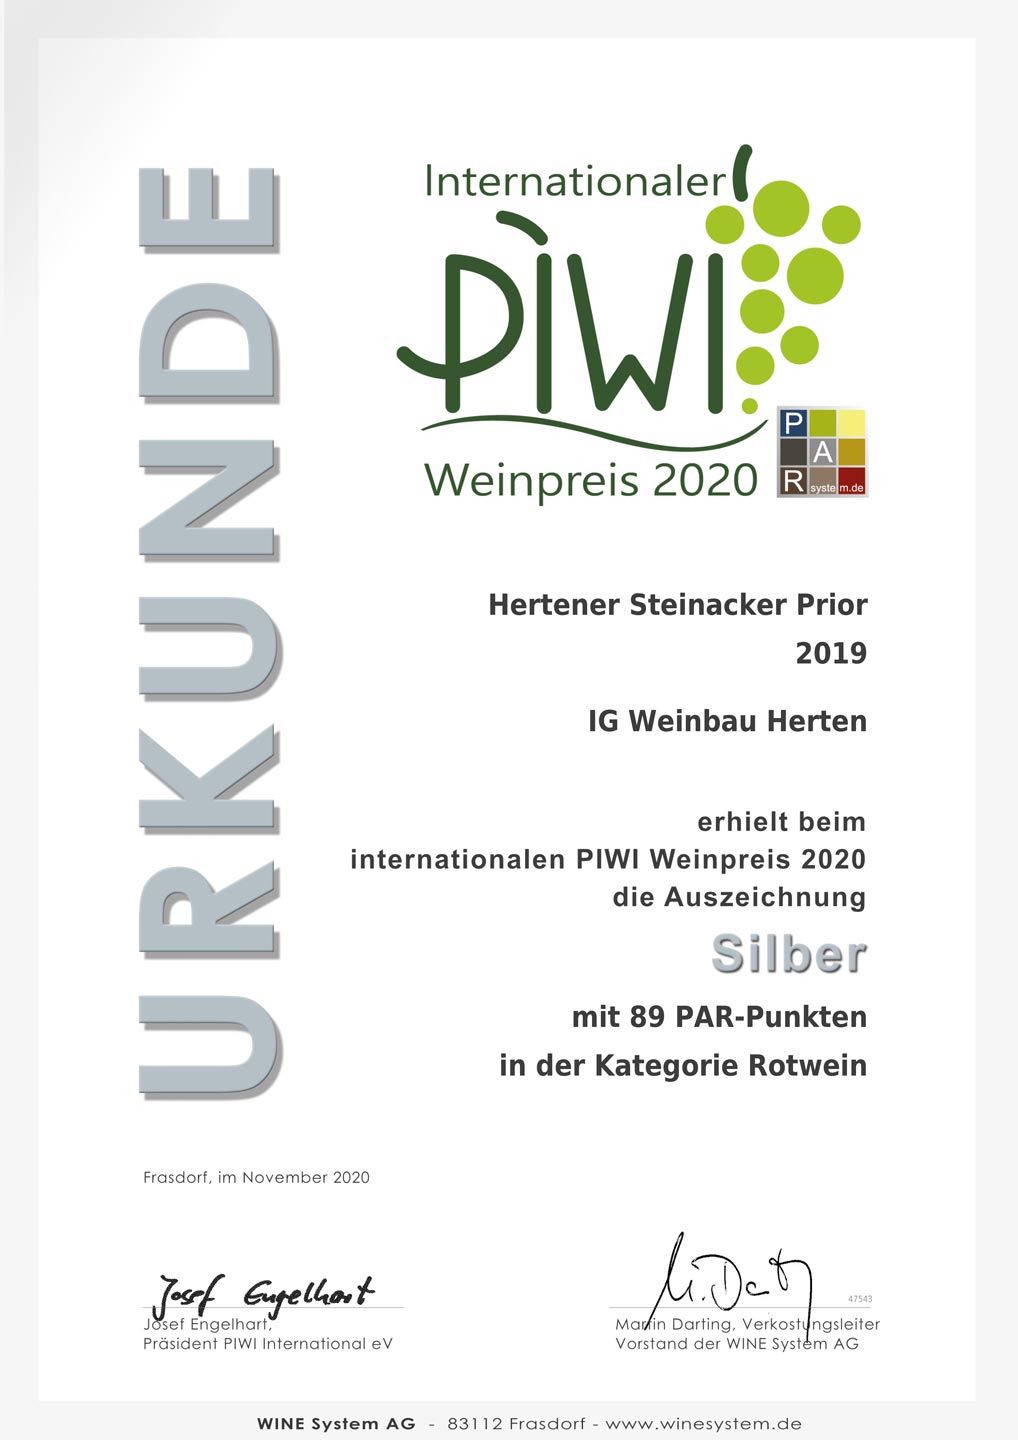 Silber beim internationalen PIWI Weinpreis 2020 für Hertener Steinacker Prior 2019